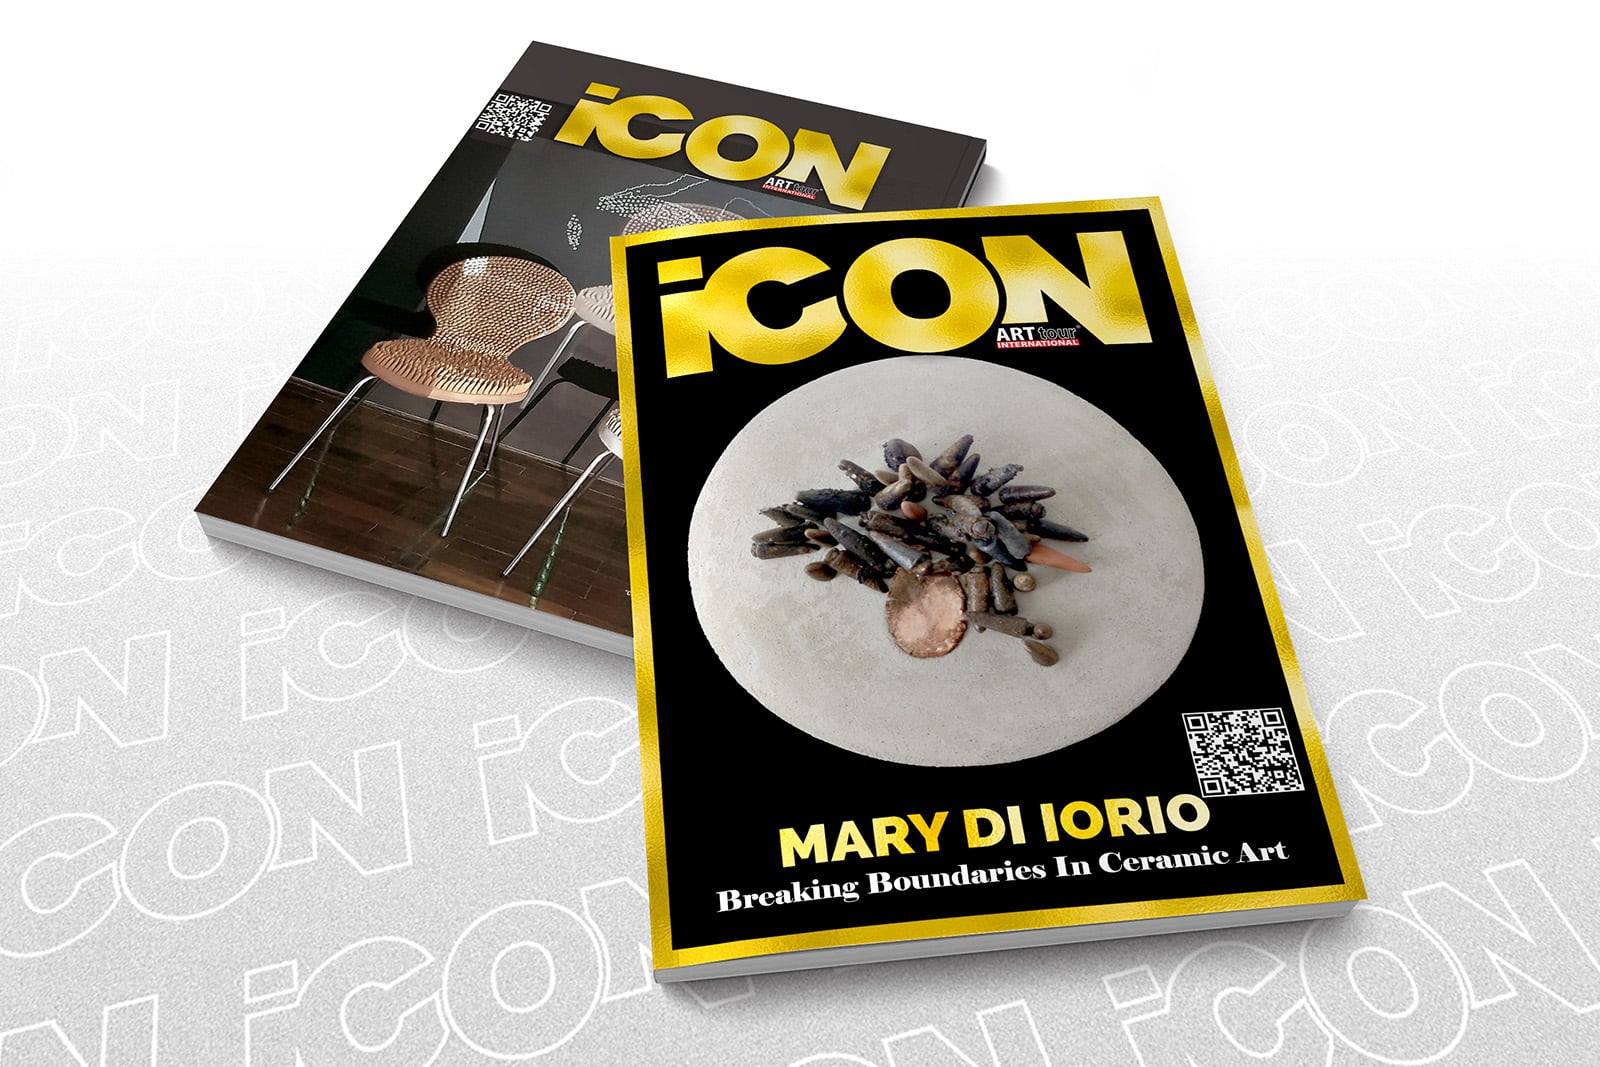 Mary Di lorio - ICON by ATIM